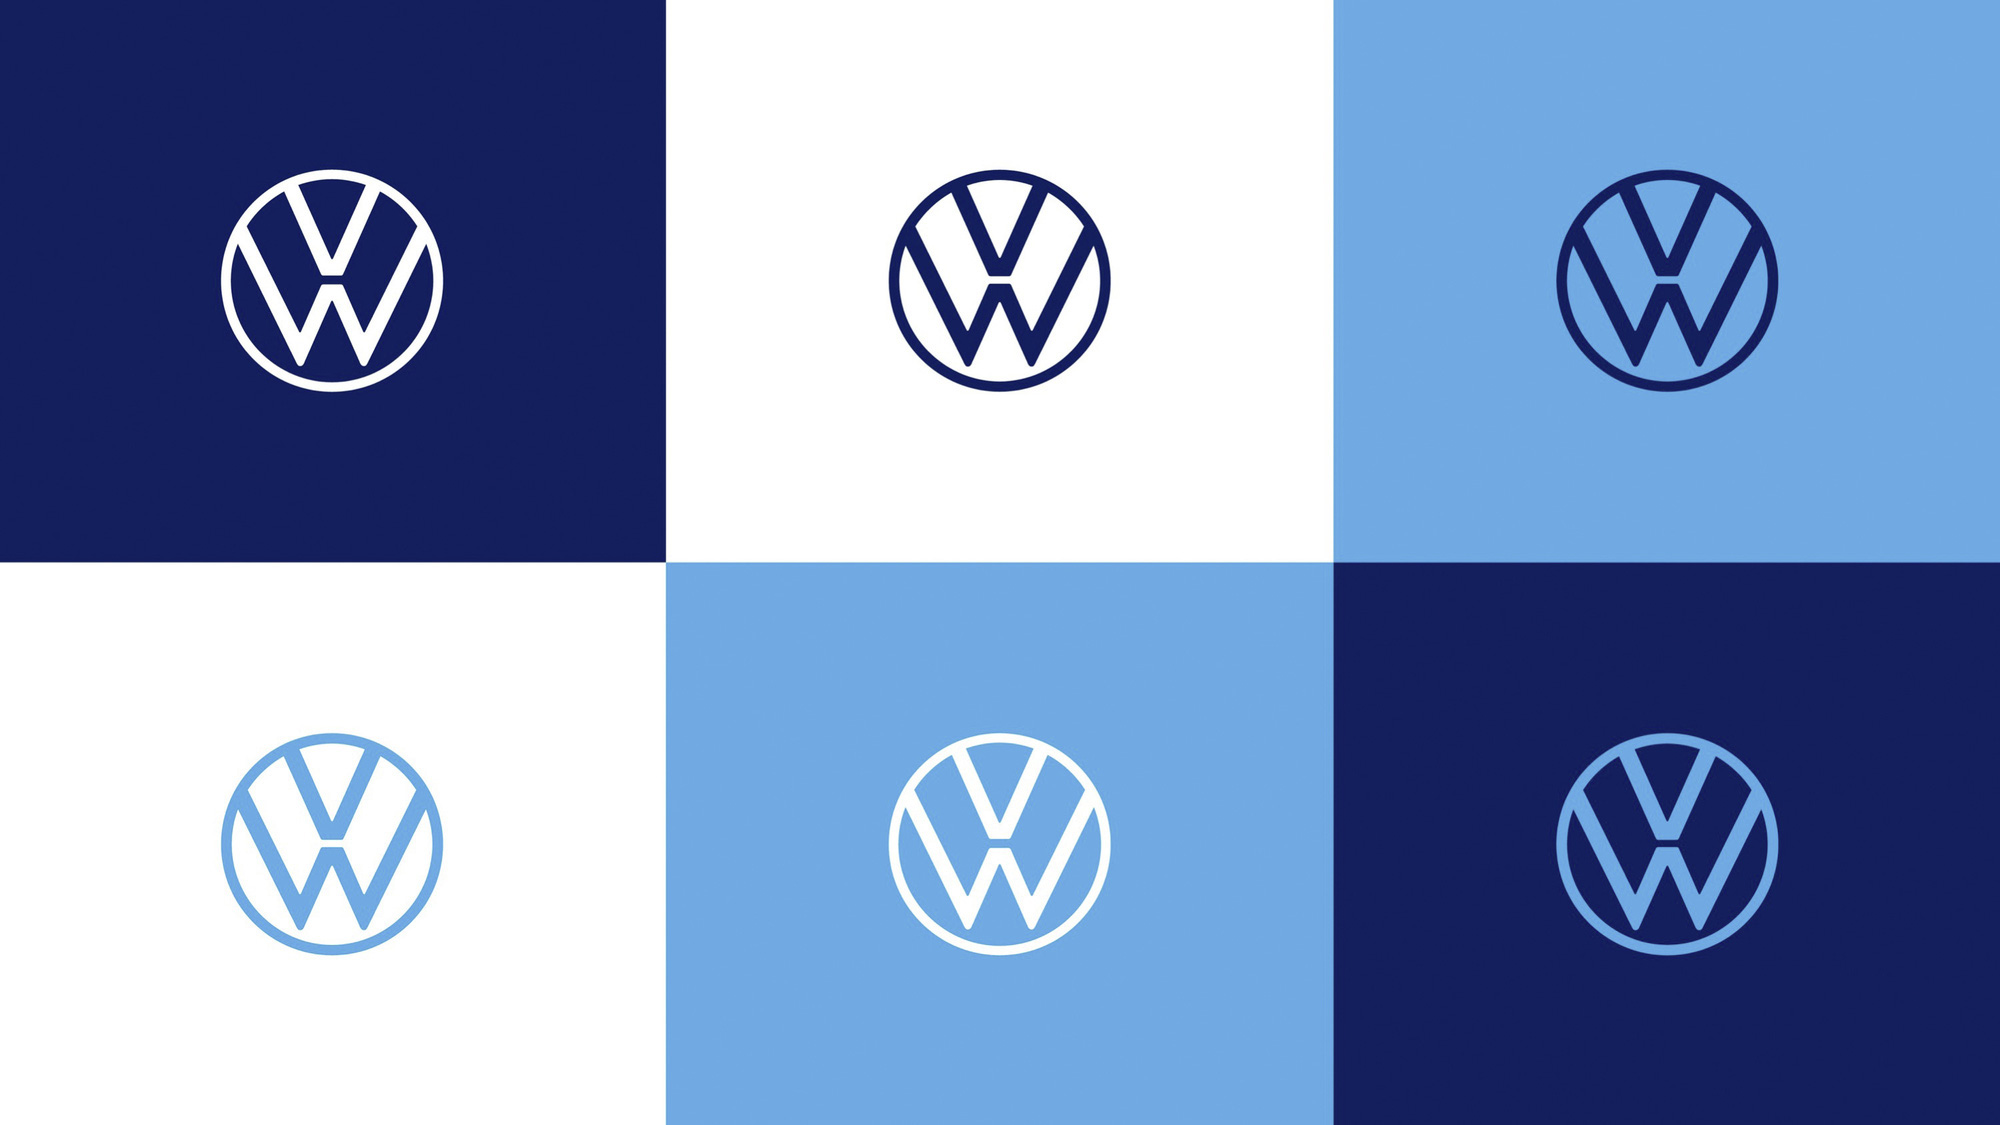 Diện mạo mới cho biểu tượng của Thương hiệu Volkswagen chính thức chào đón tại Việt Nam - Ảnh 2.